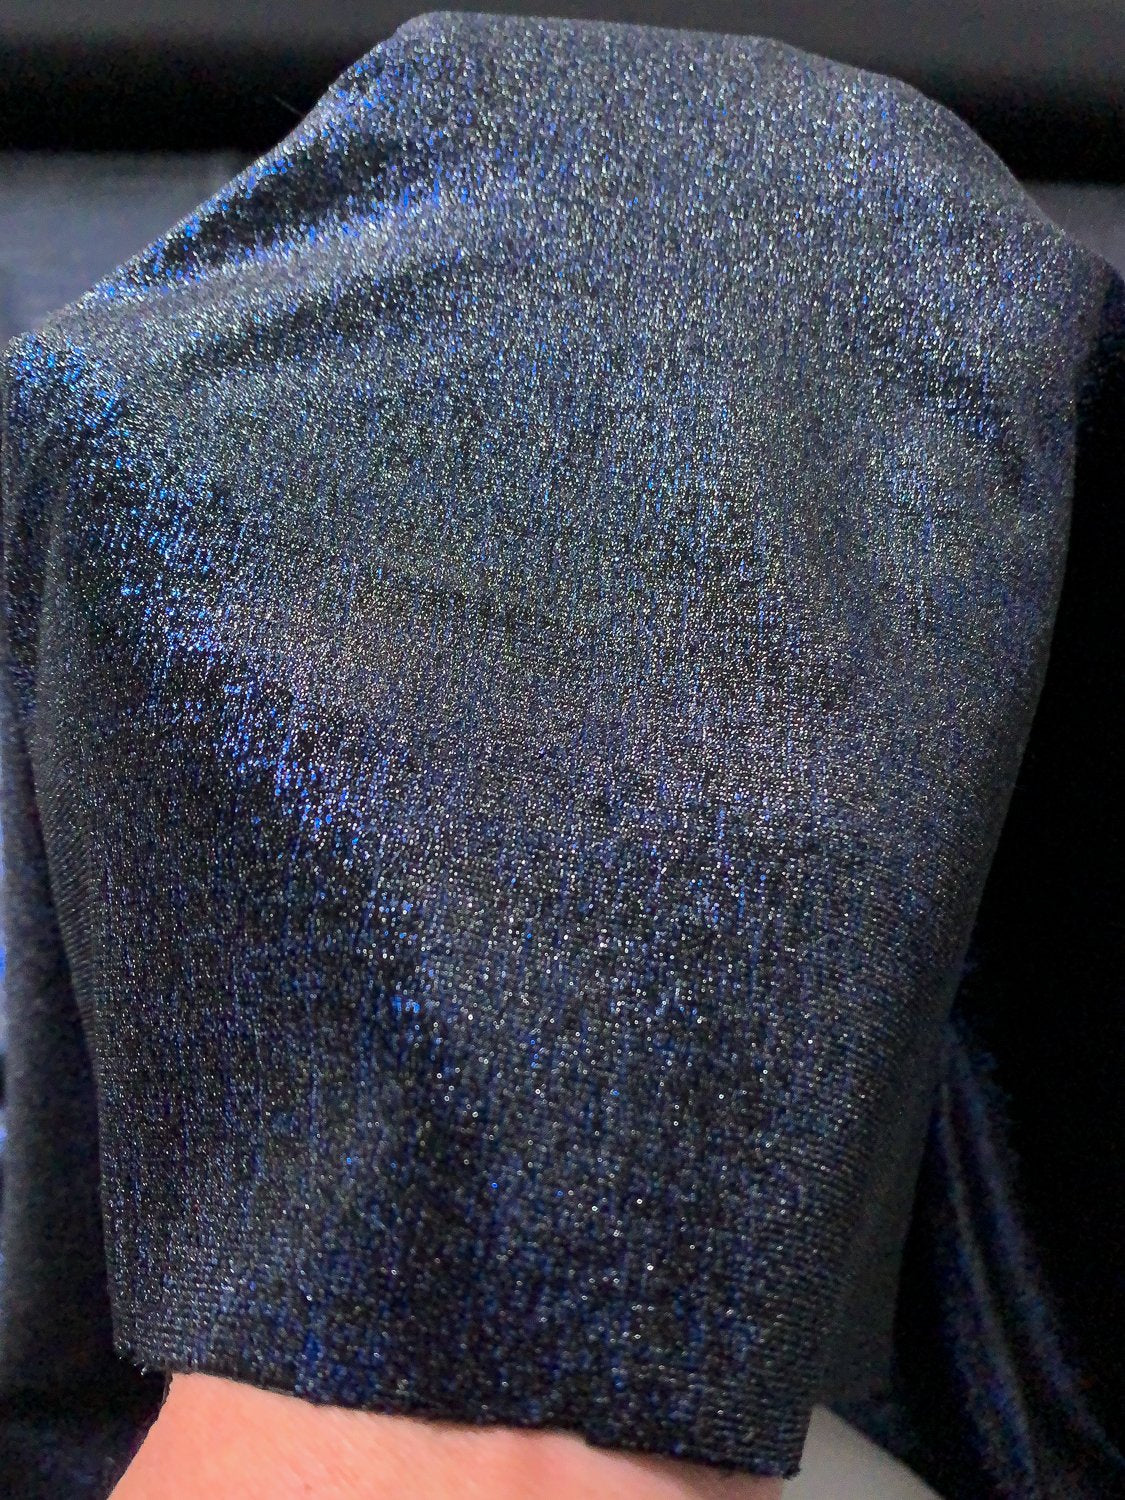 Shimmery Stretch Polyester Velvet - Metallic Blue / Black